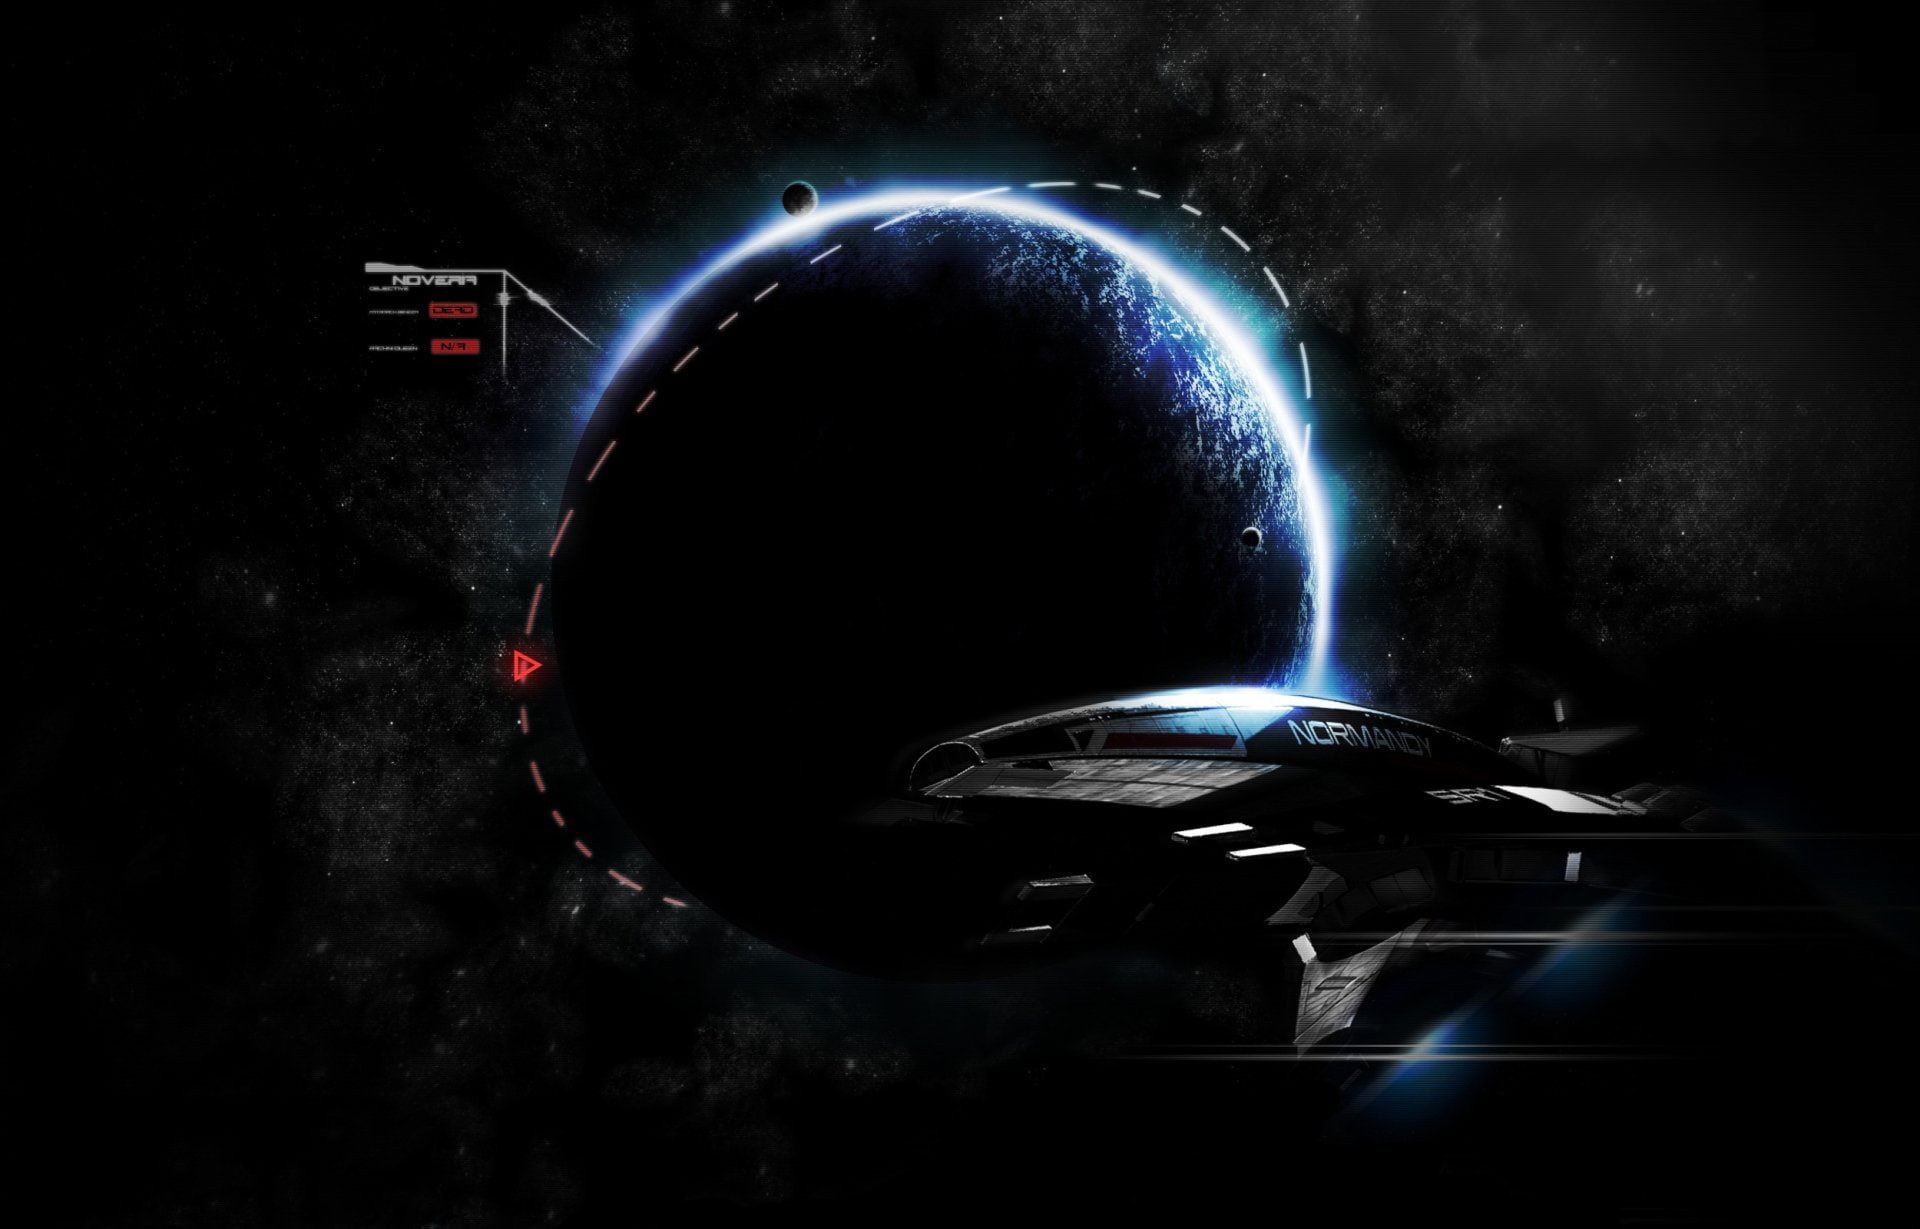 Mass Effect, Normandy SR-1